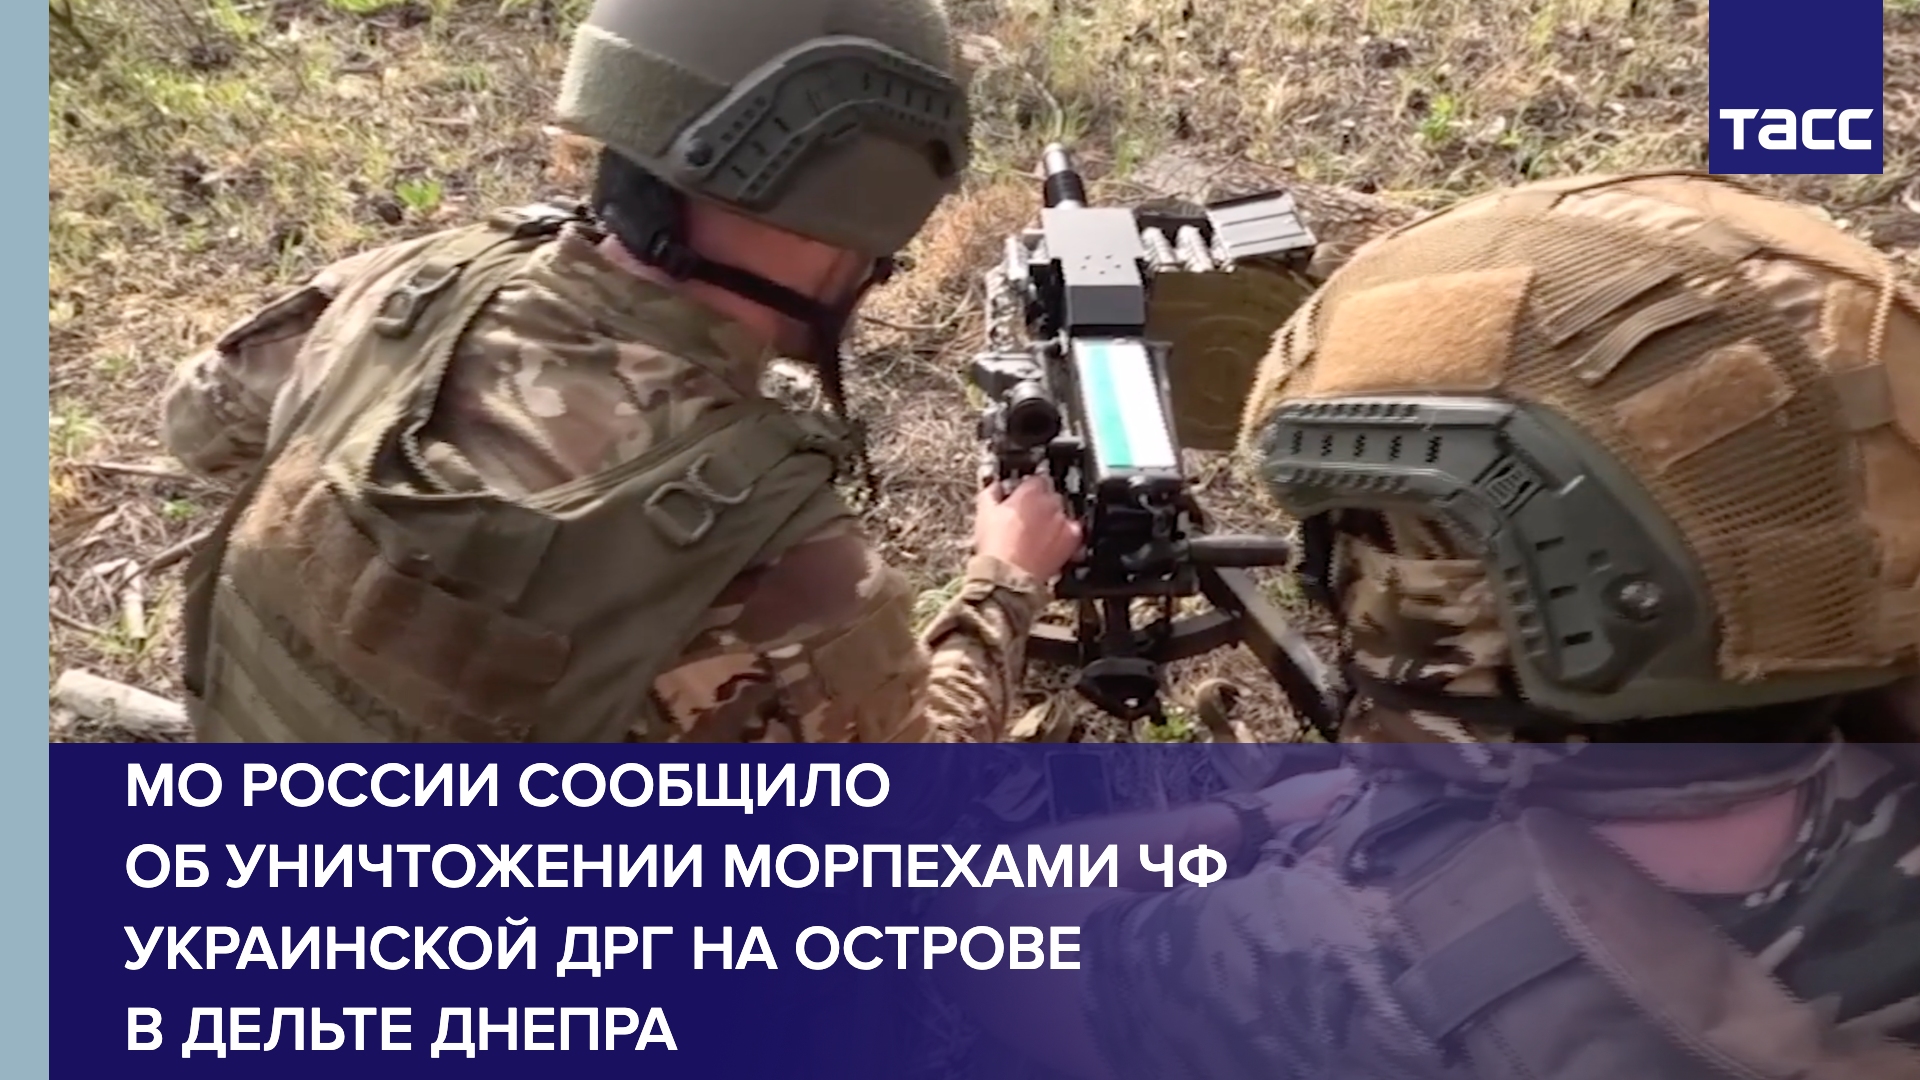 МО России сообщило об уничтожении морпехами ЧФ украинской ДРГ на острове в дельте Днепра